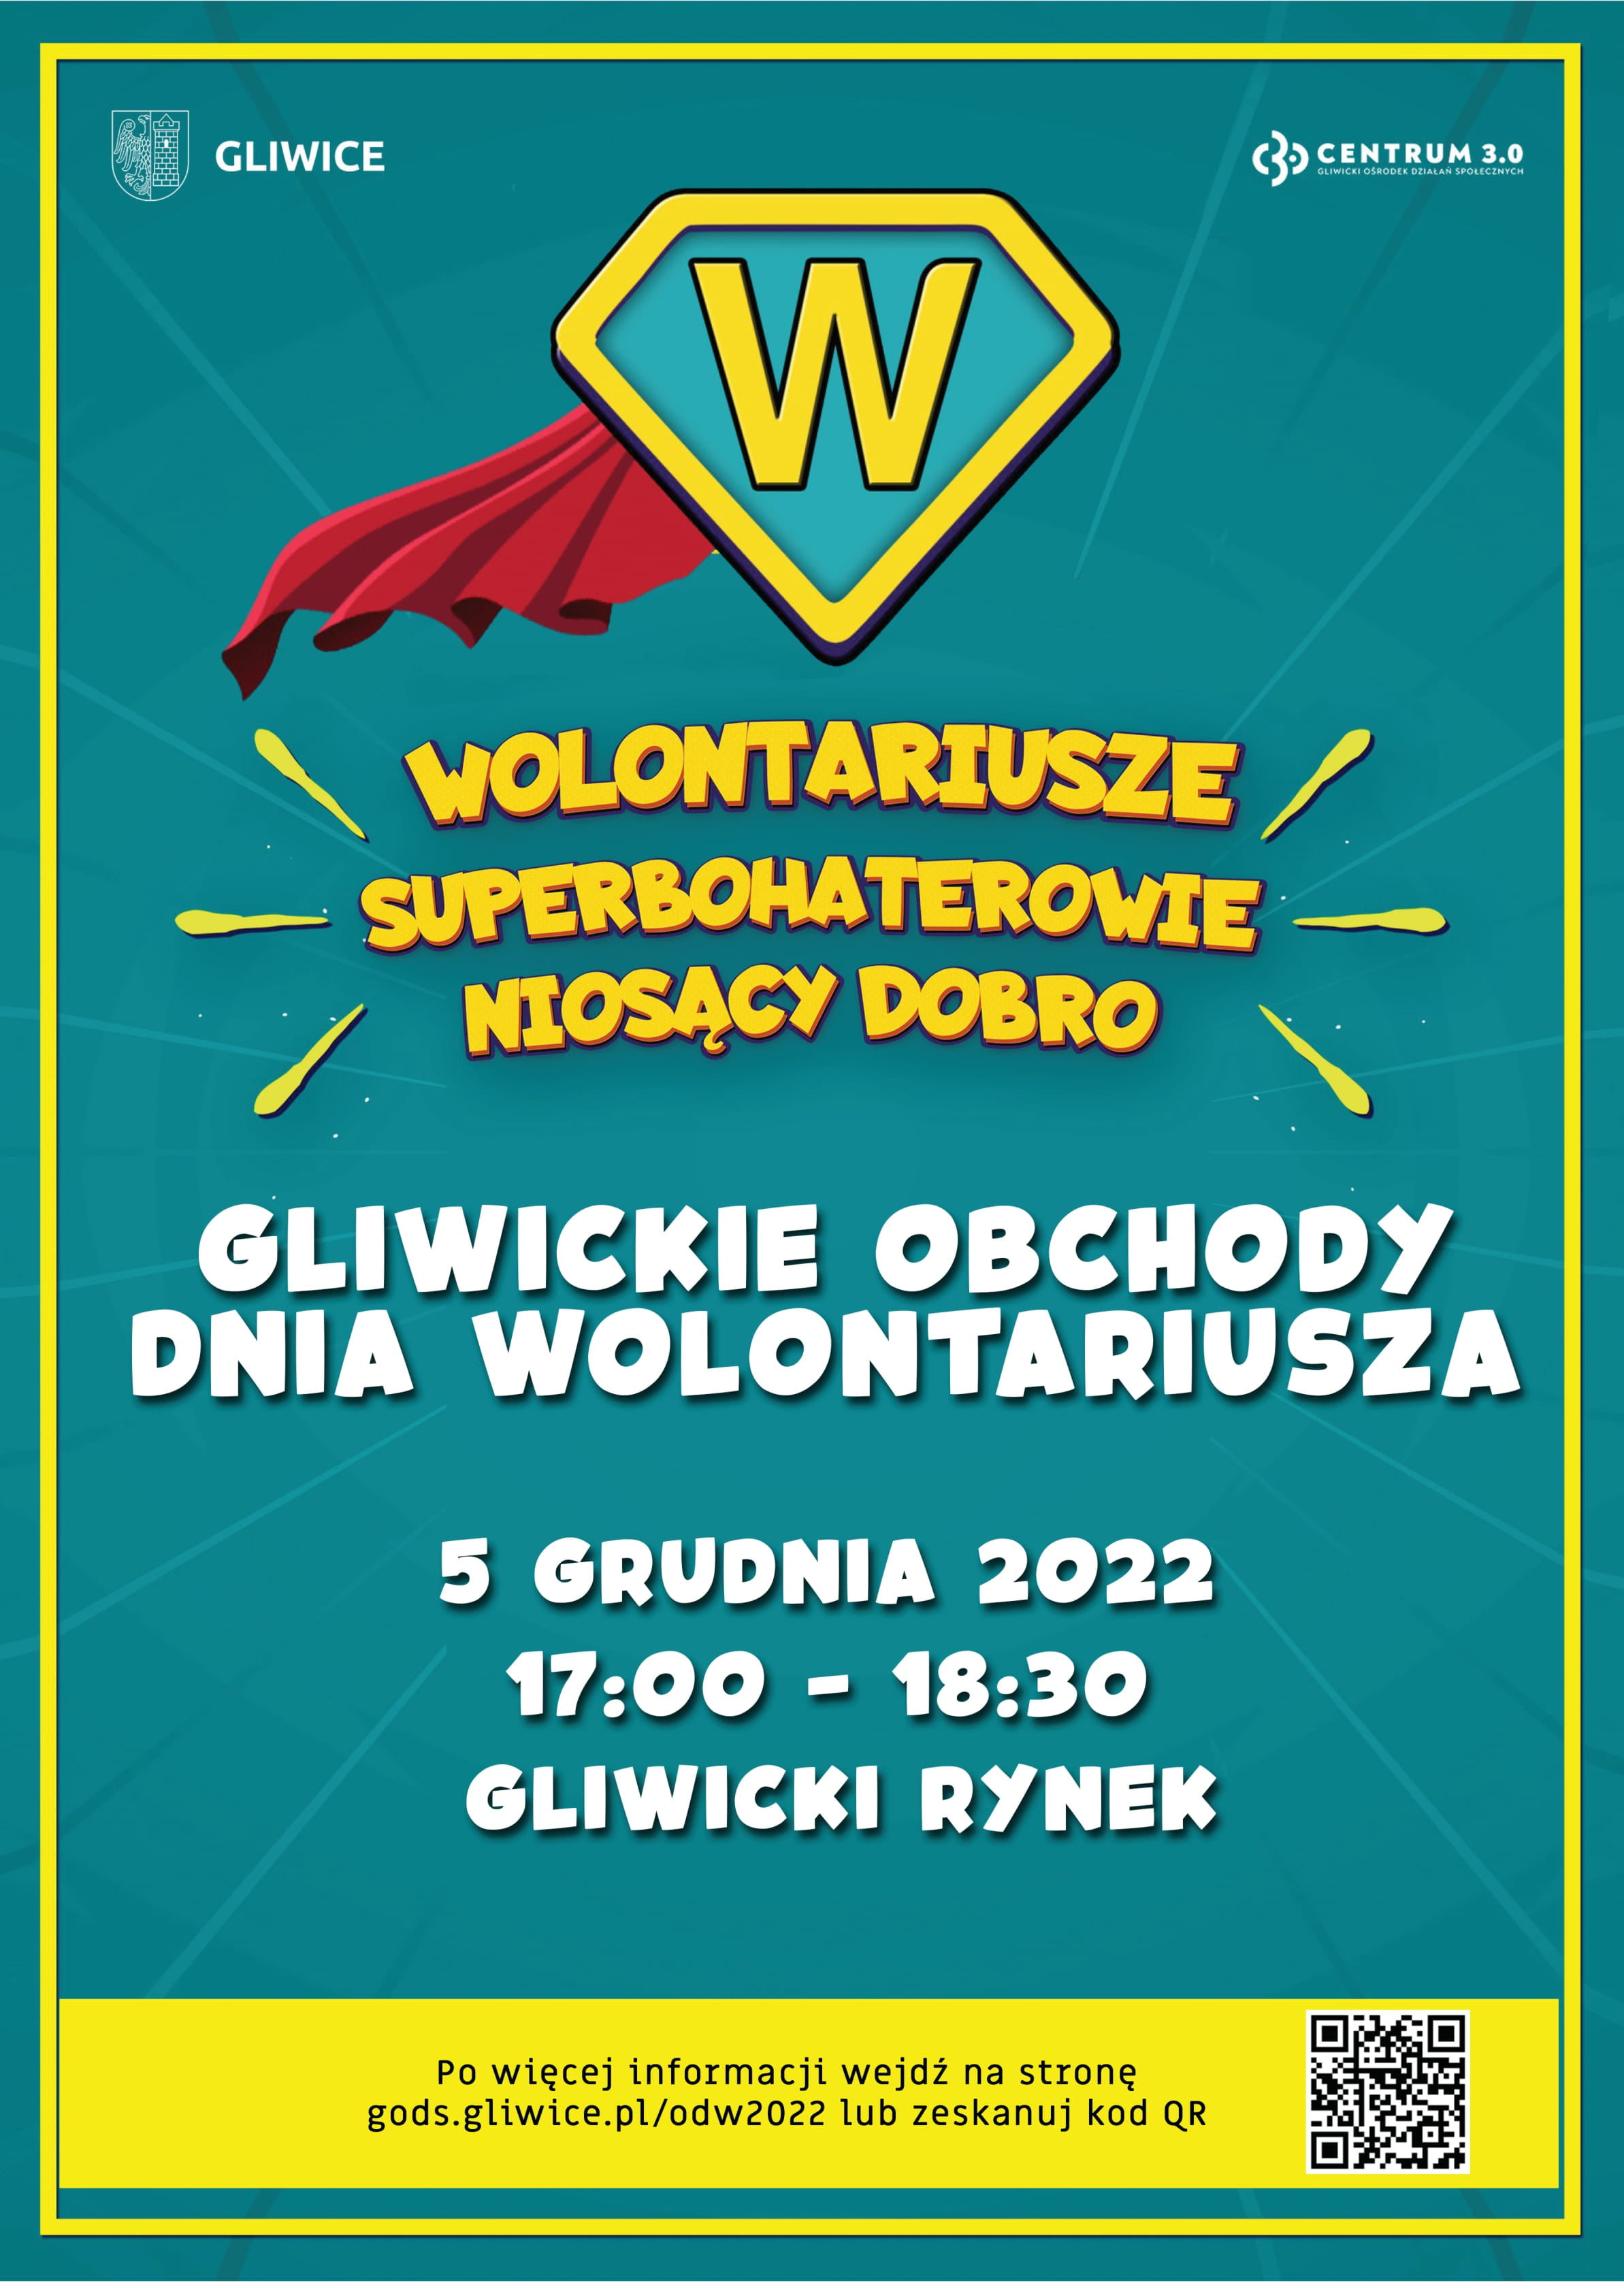 Plakat promujący gliwickie obchody Dnia Wolontariusza